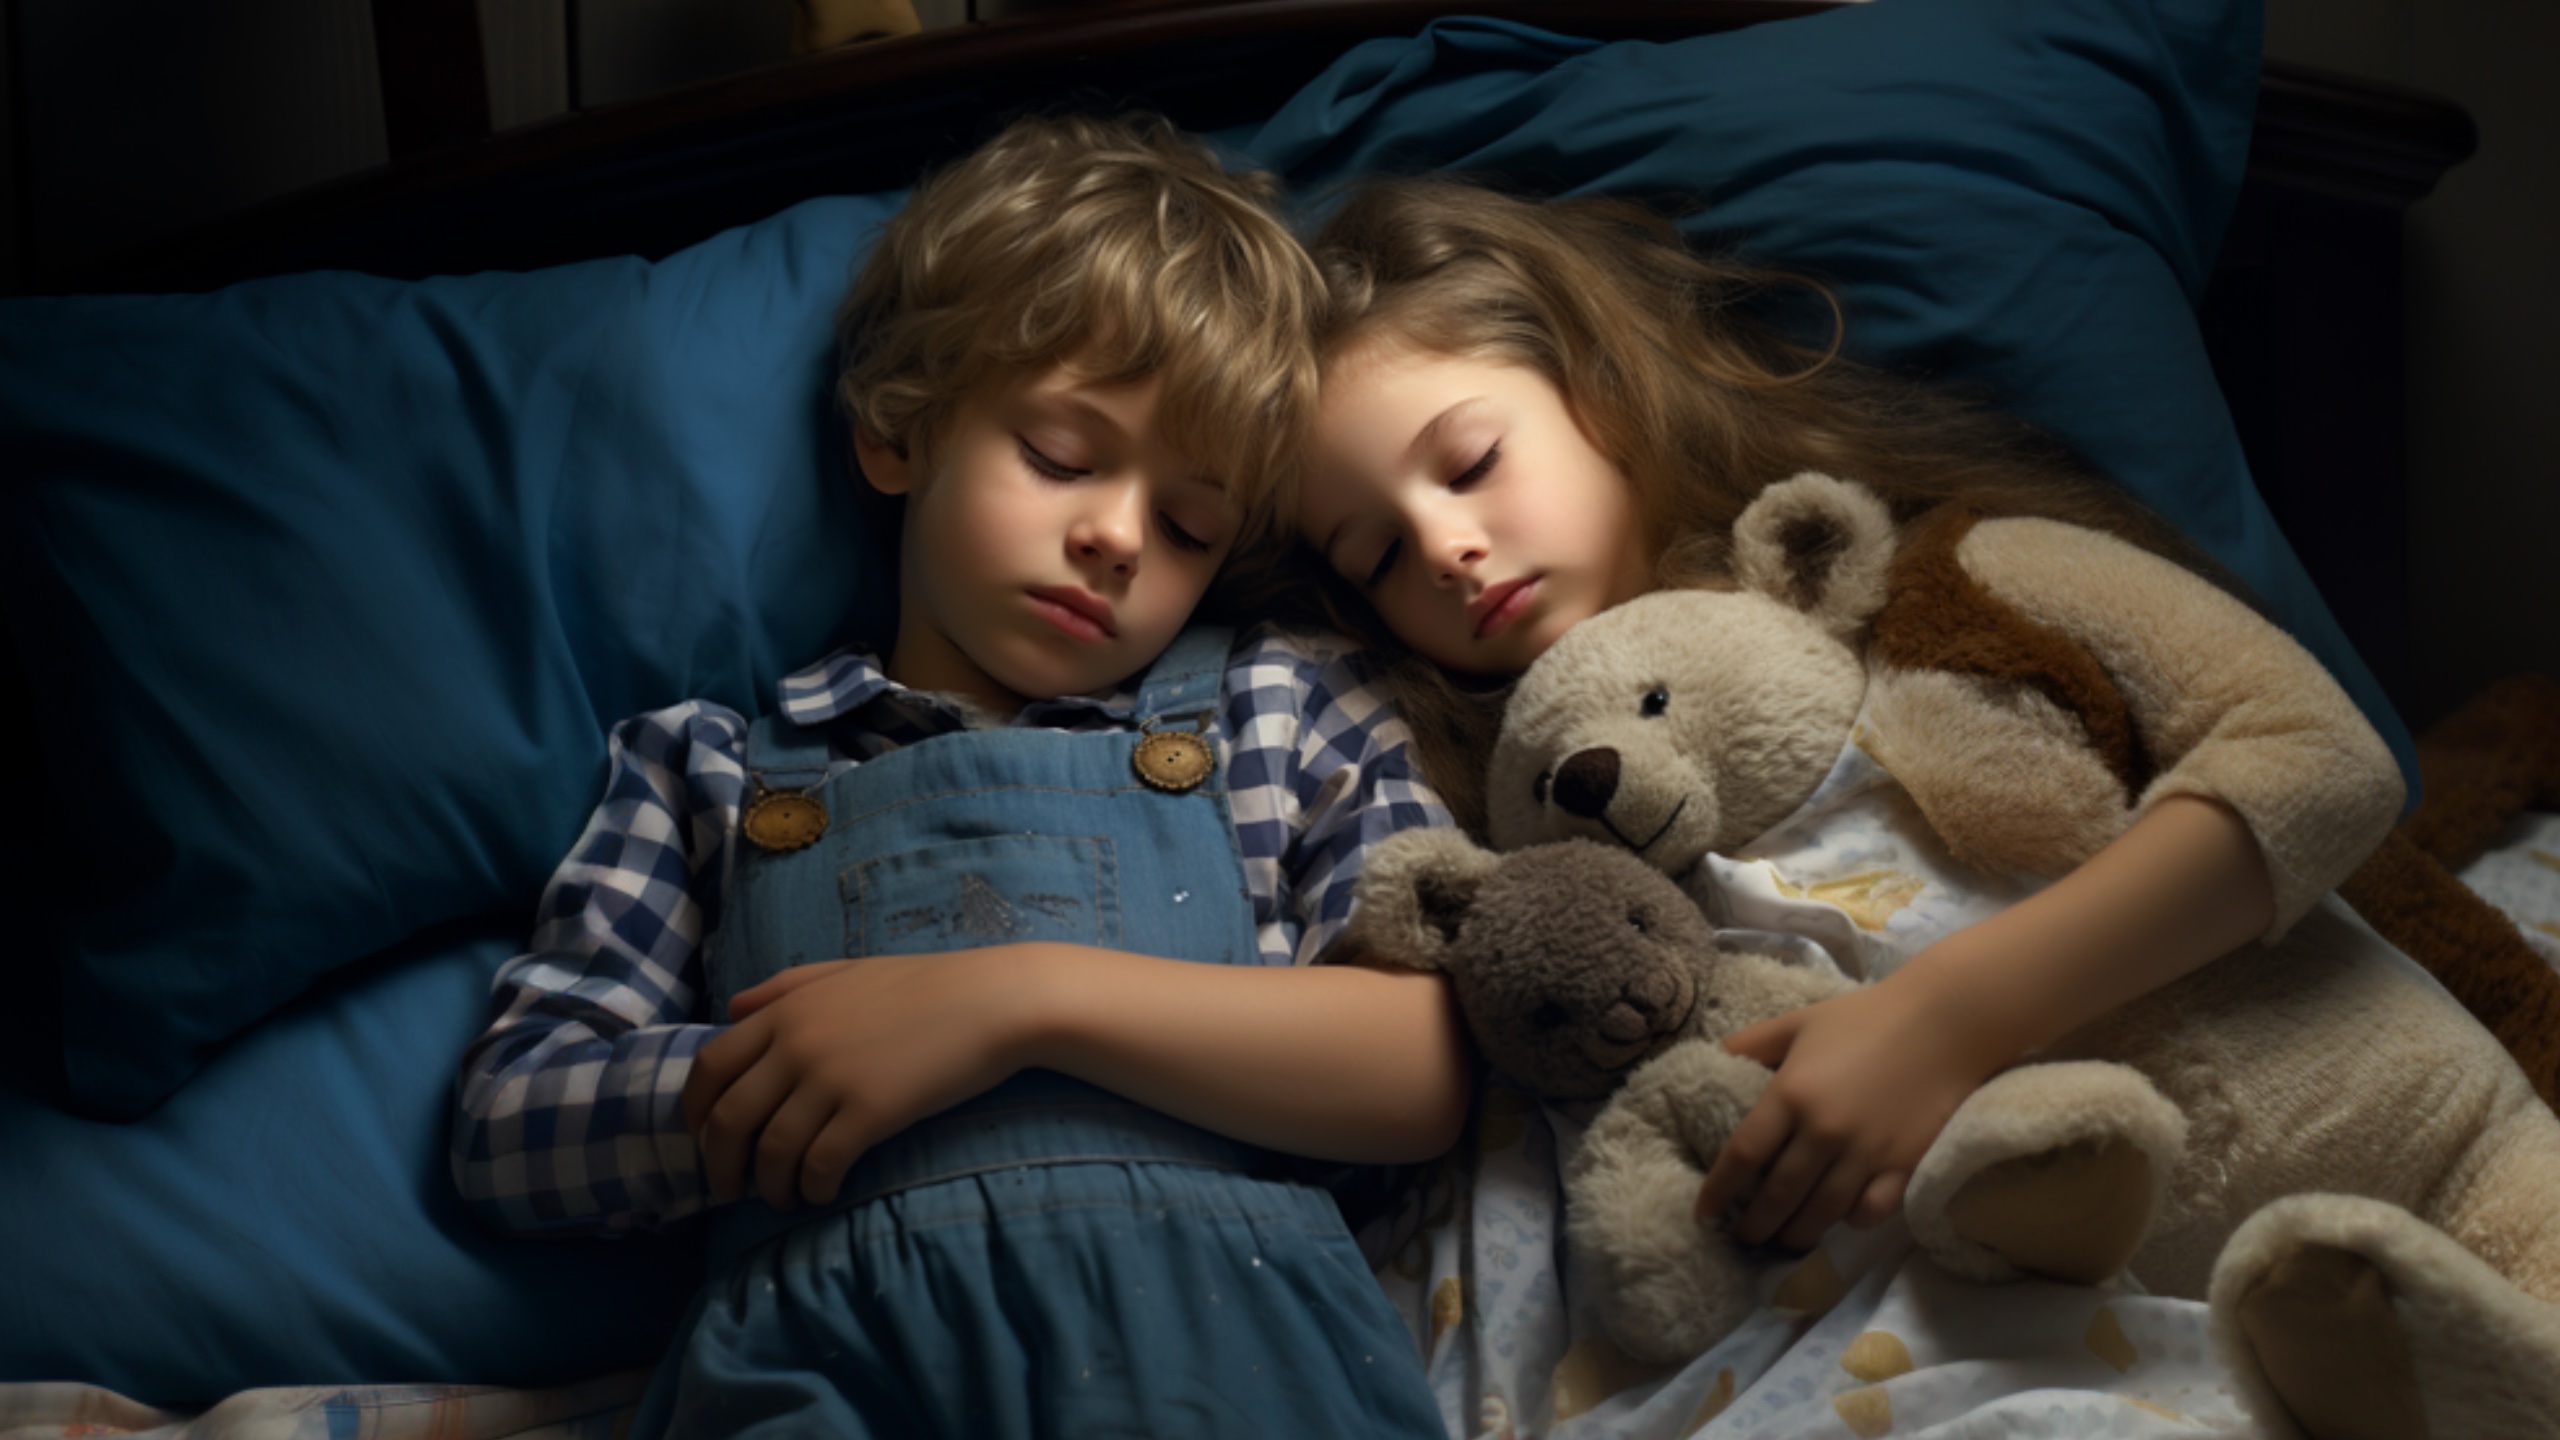 المخاوف القانونية والأخلاقية التي أثيرت مع تهدئة الذكاء الاصطناعي للأطفال للنوم